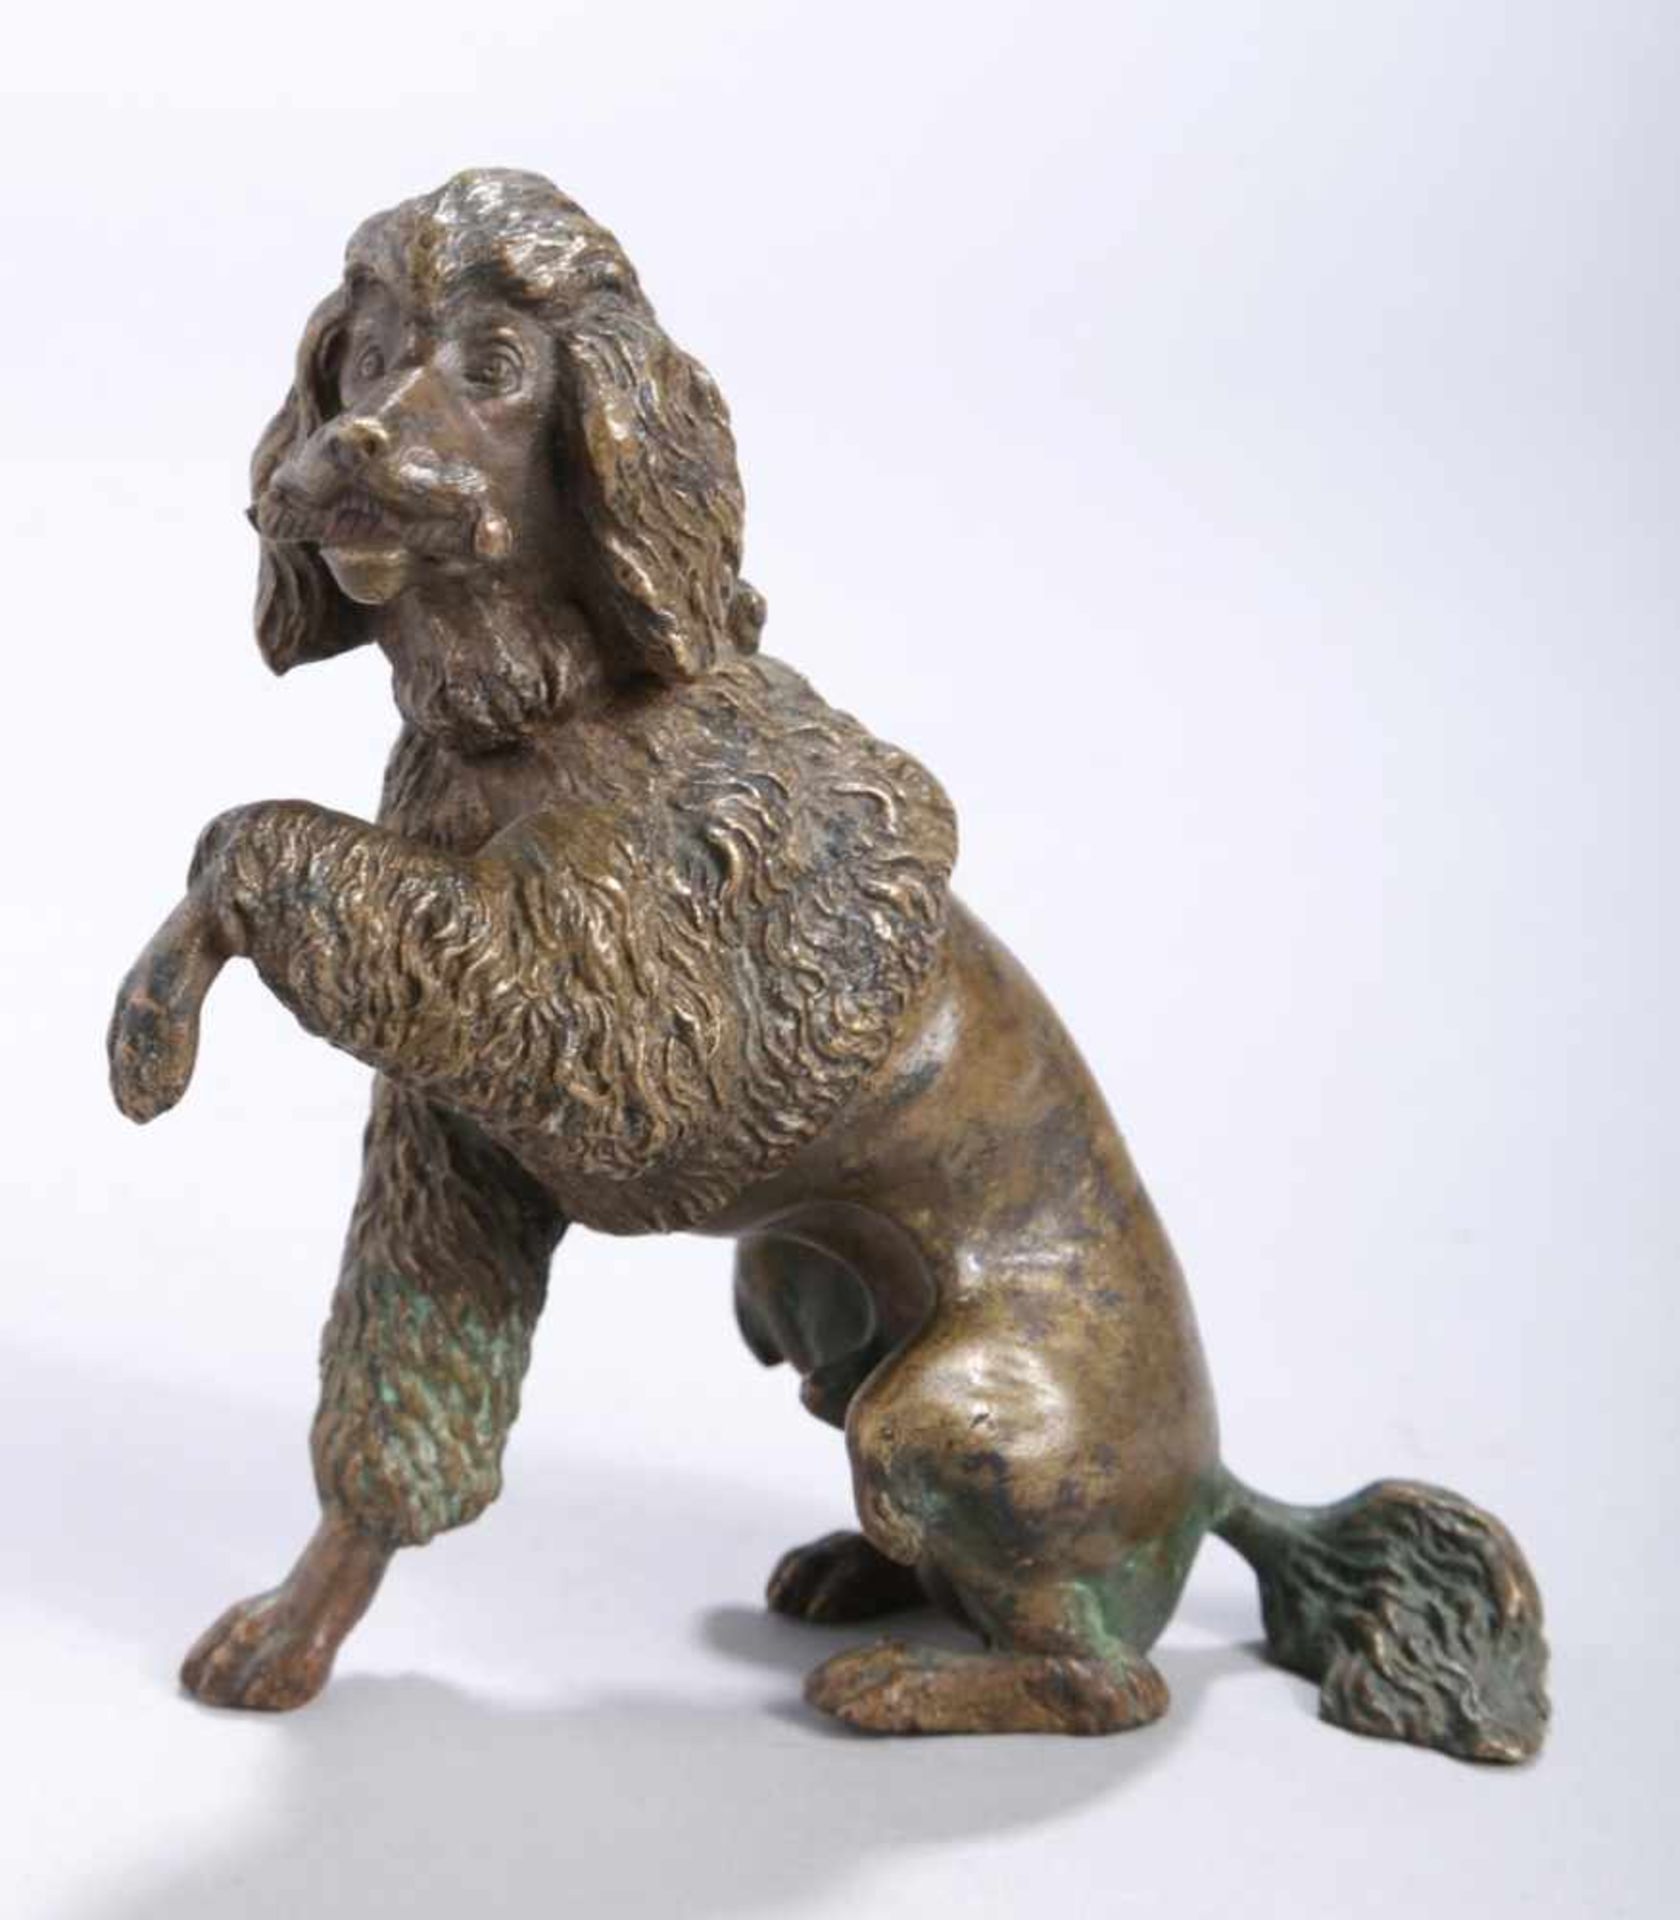 Bronze-Tierplastik, "Pudel", anonymer Bildhauer um 1900, naturalistische, sitzendeDarstellung mit